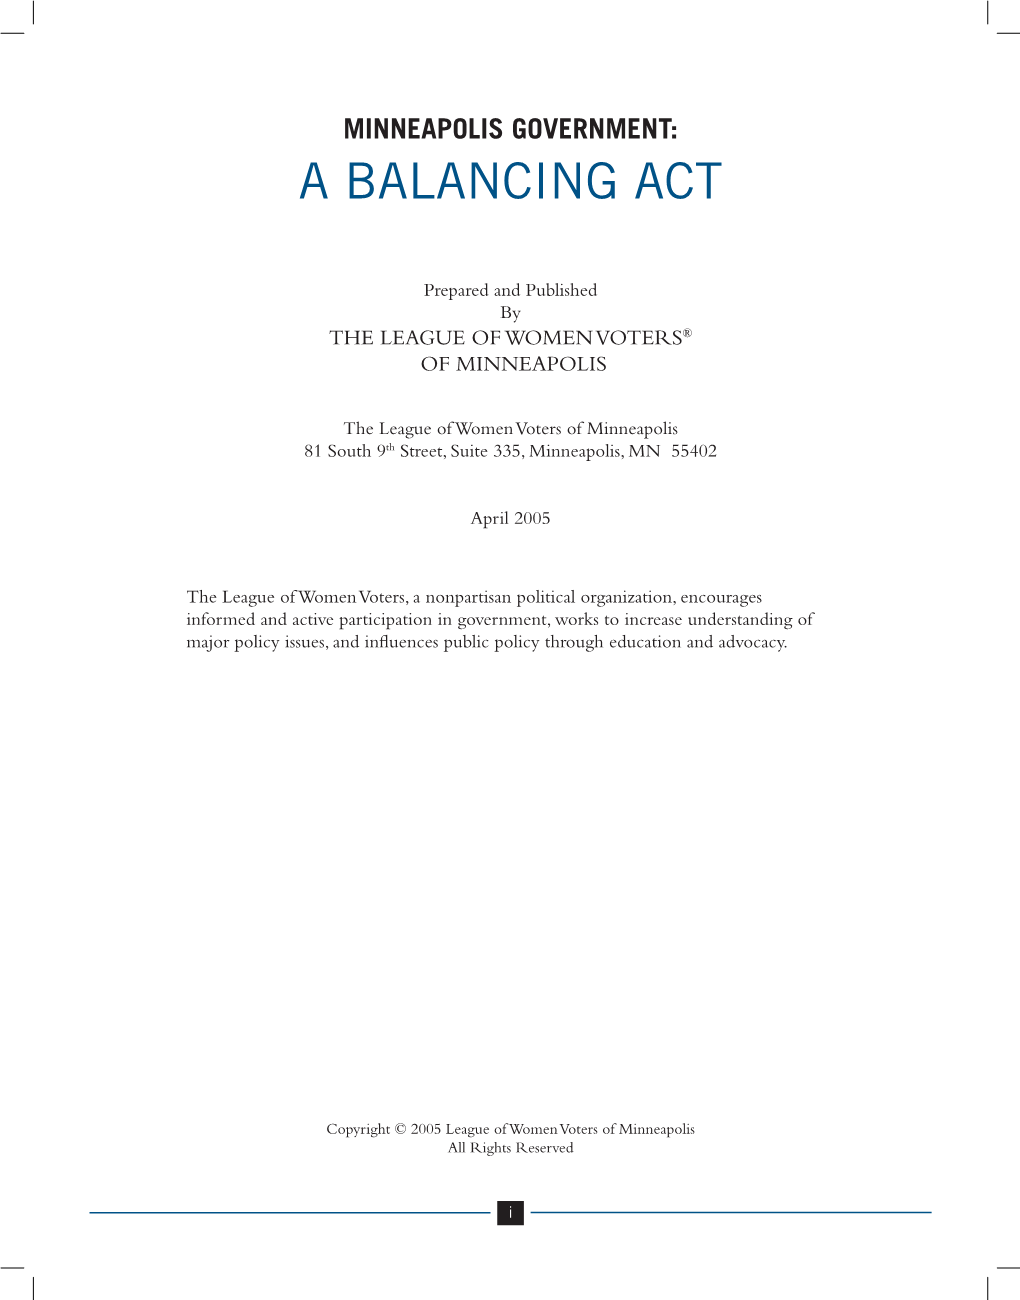 Balancing Act (Part 1)